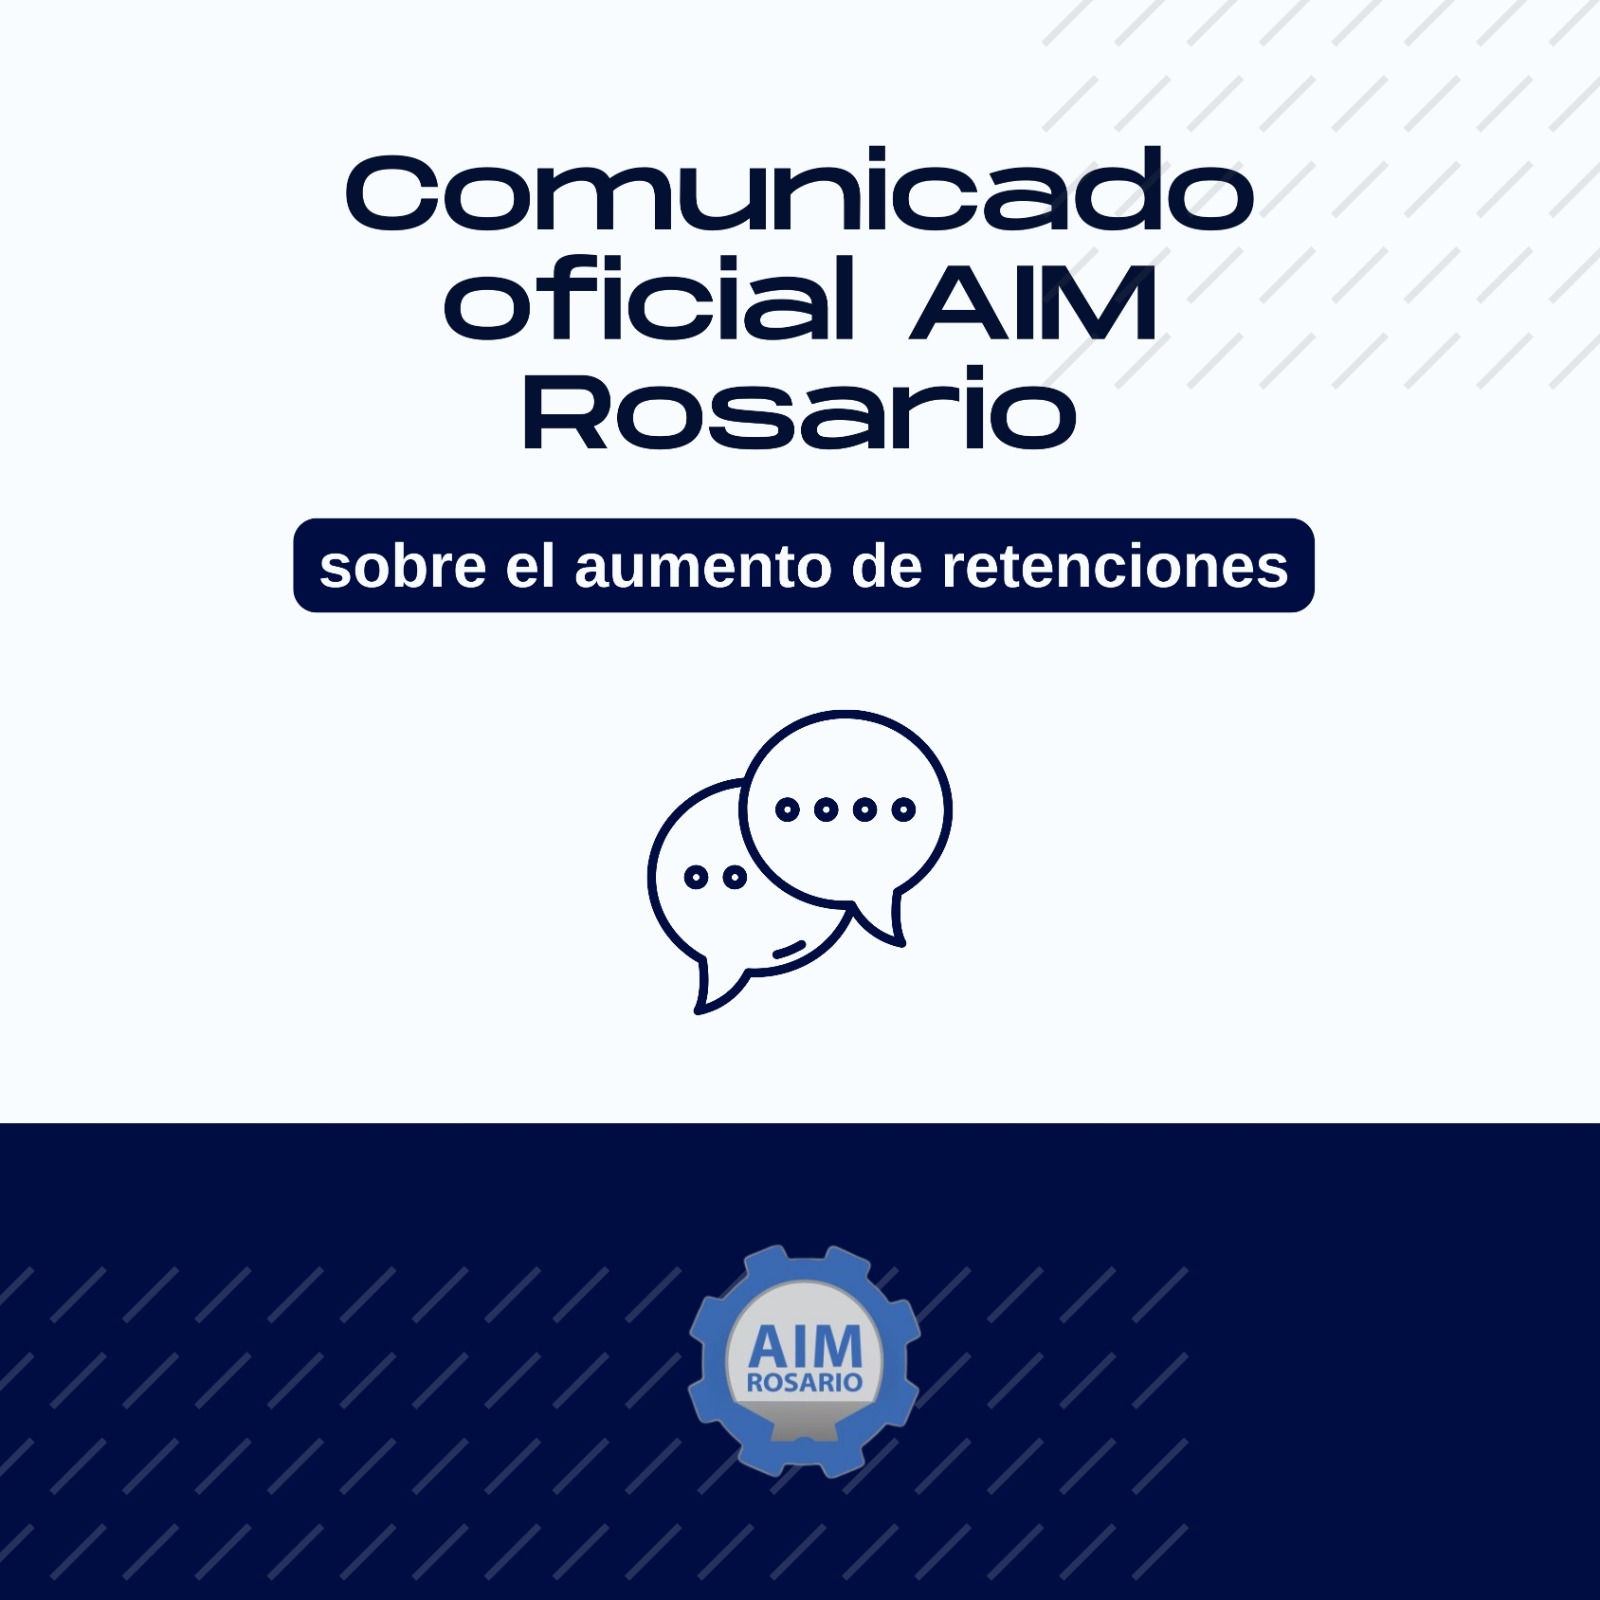 Comunicado de AIM Rosario sobre el aumento de retenciones